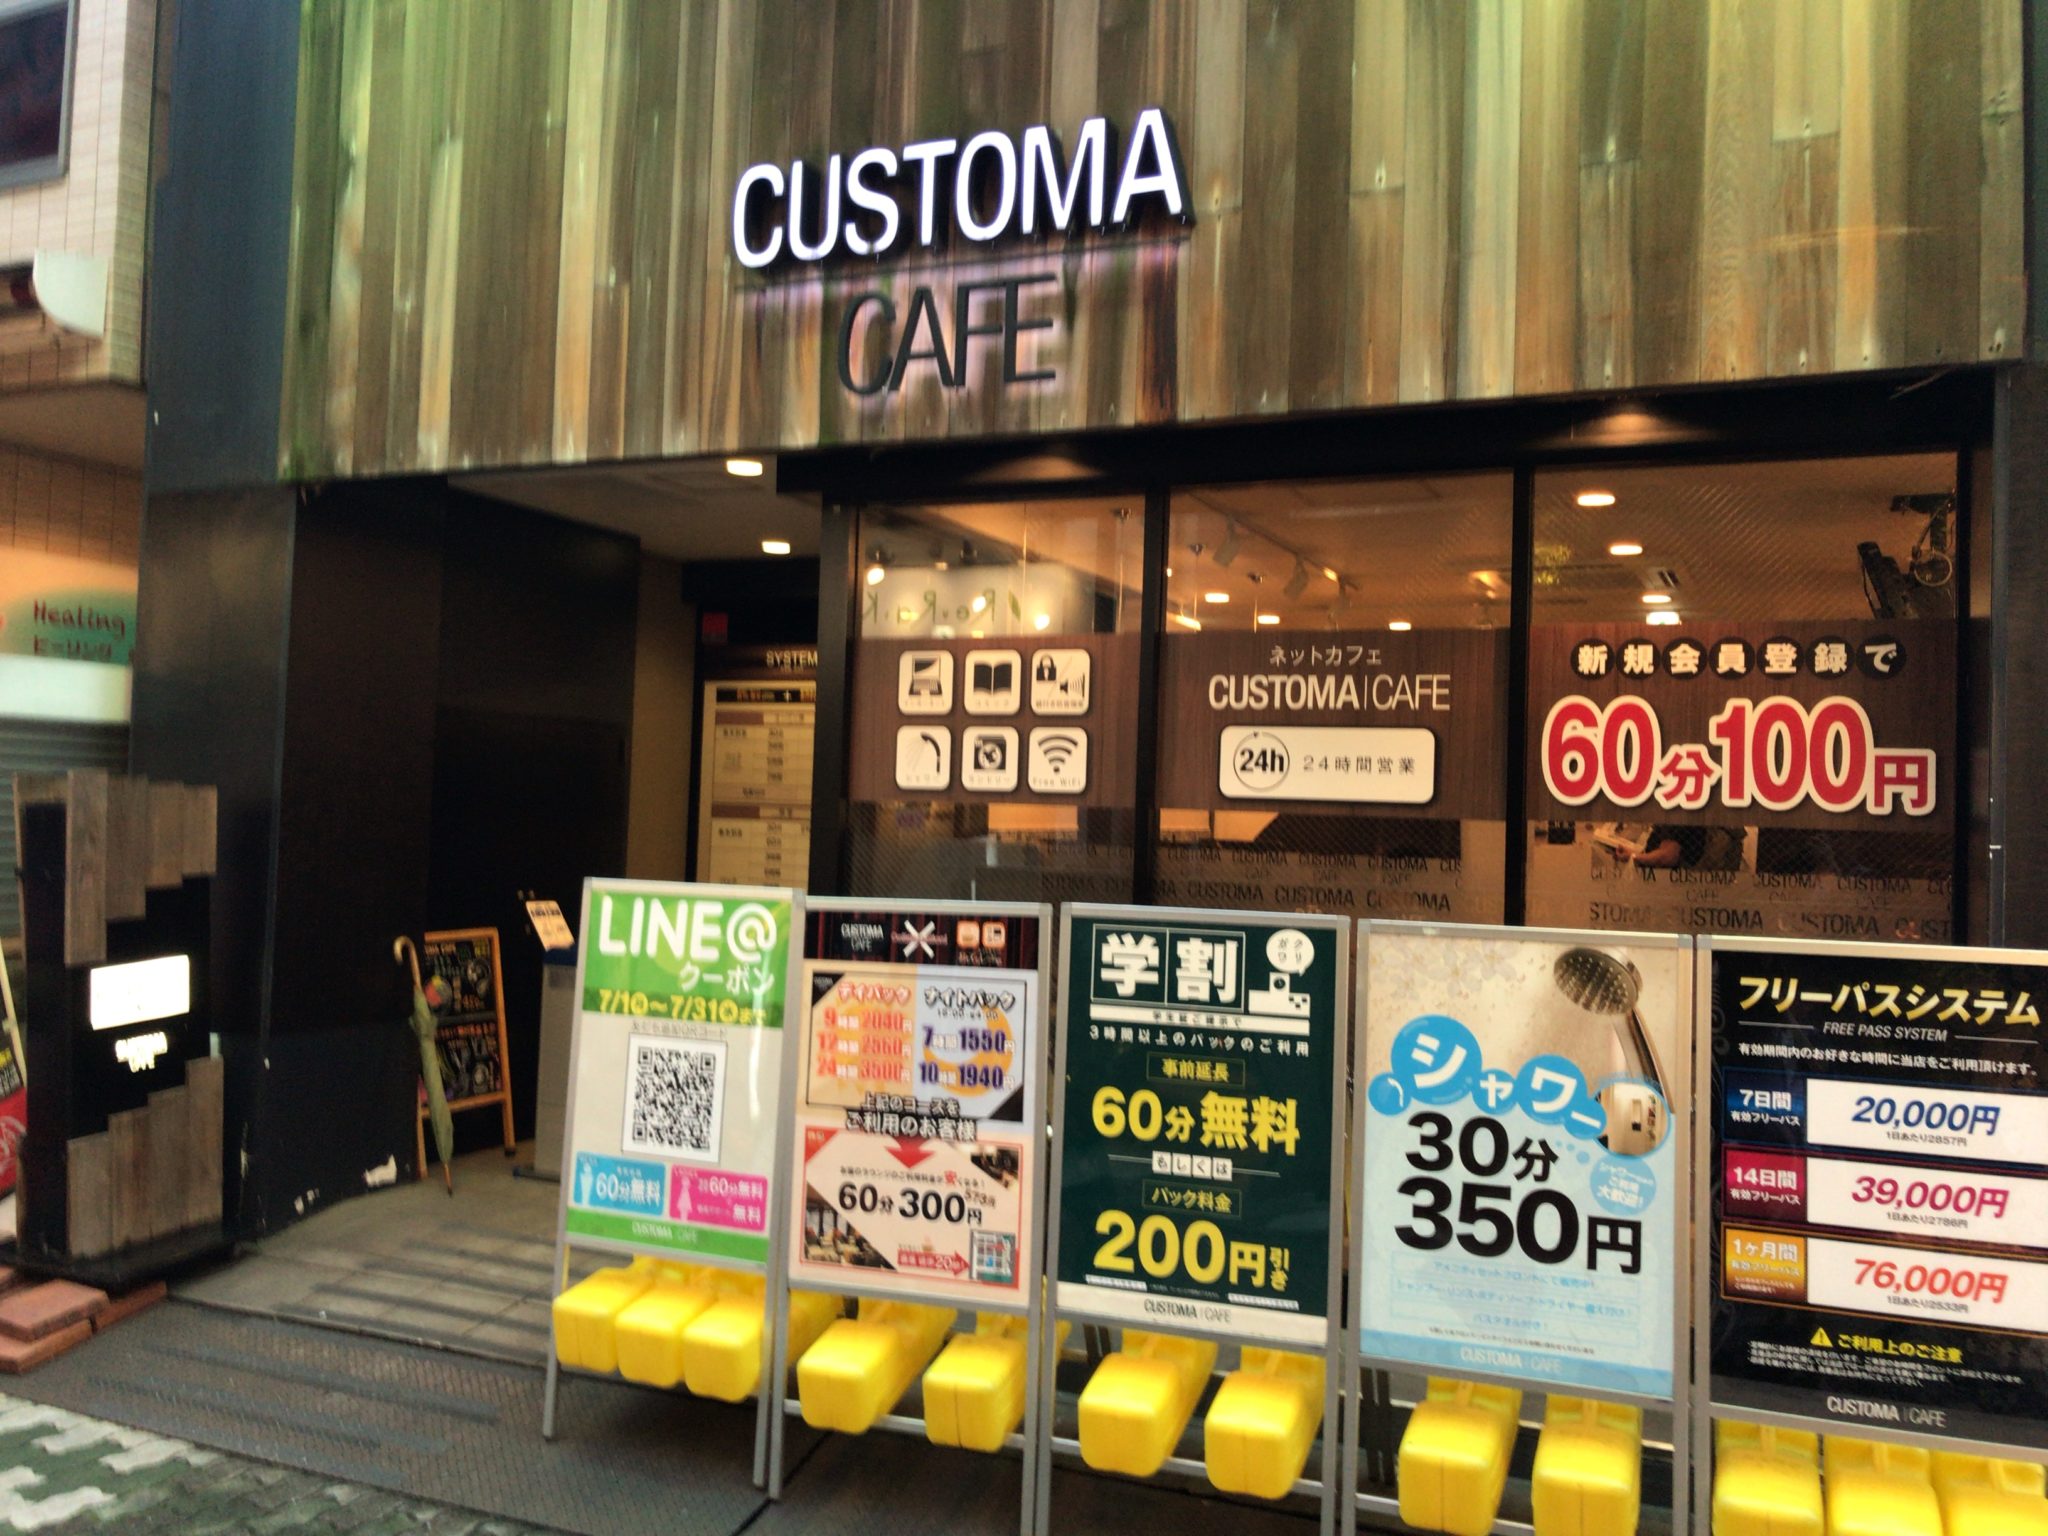 上野駅から徒歩2分 カスタマカフェ 上野店をレポート ヒマップ